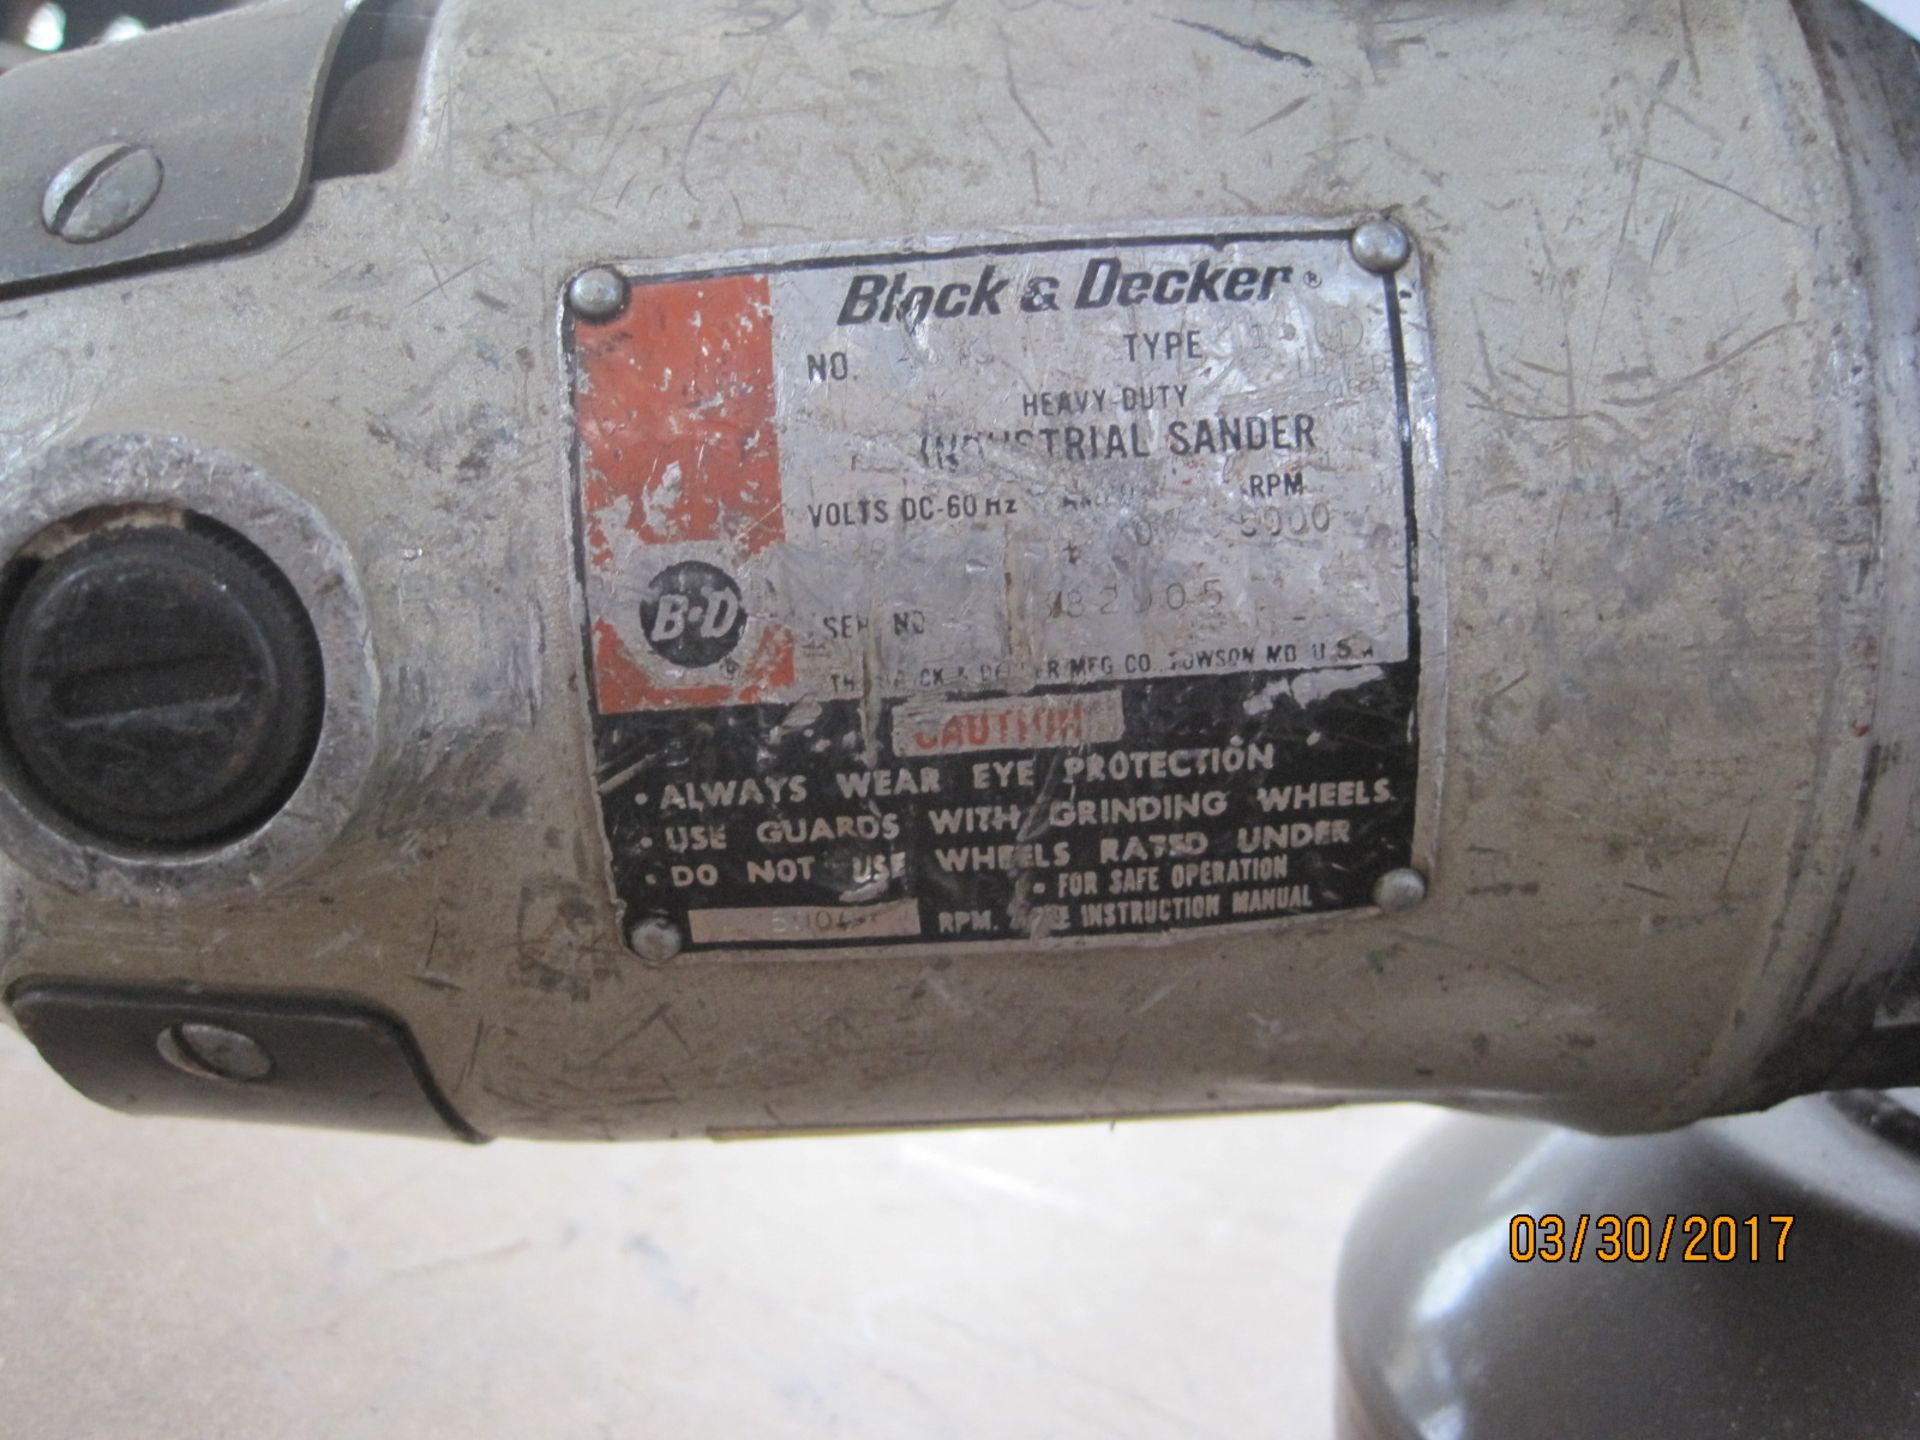 Black & Decker HD angle grinder/sander - Image 2 of 2